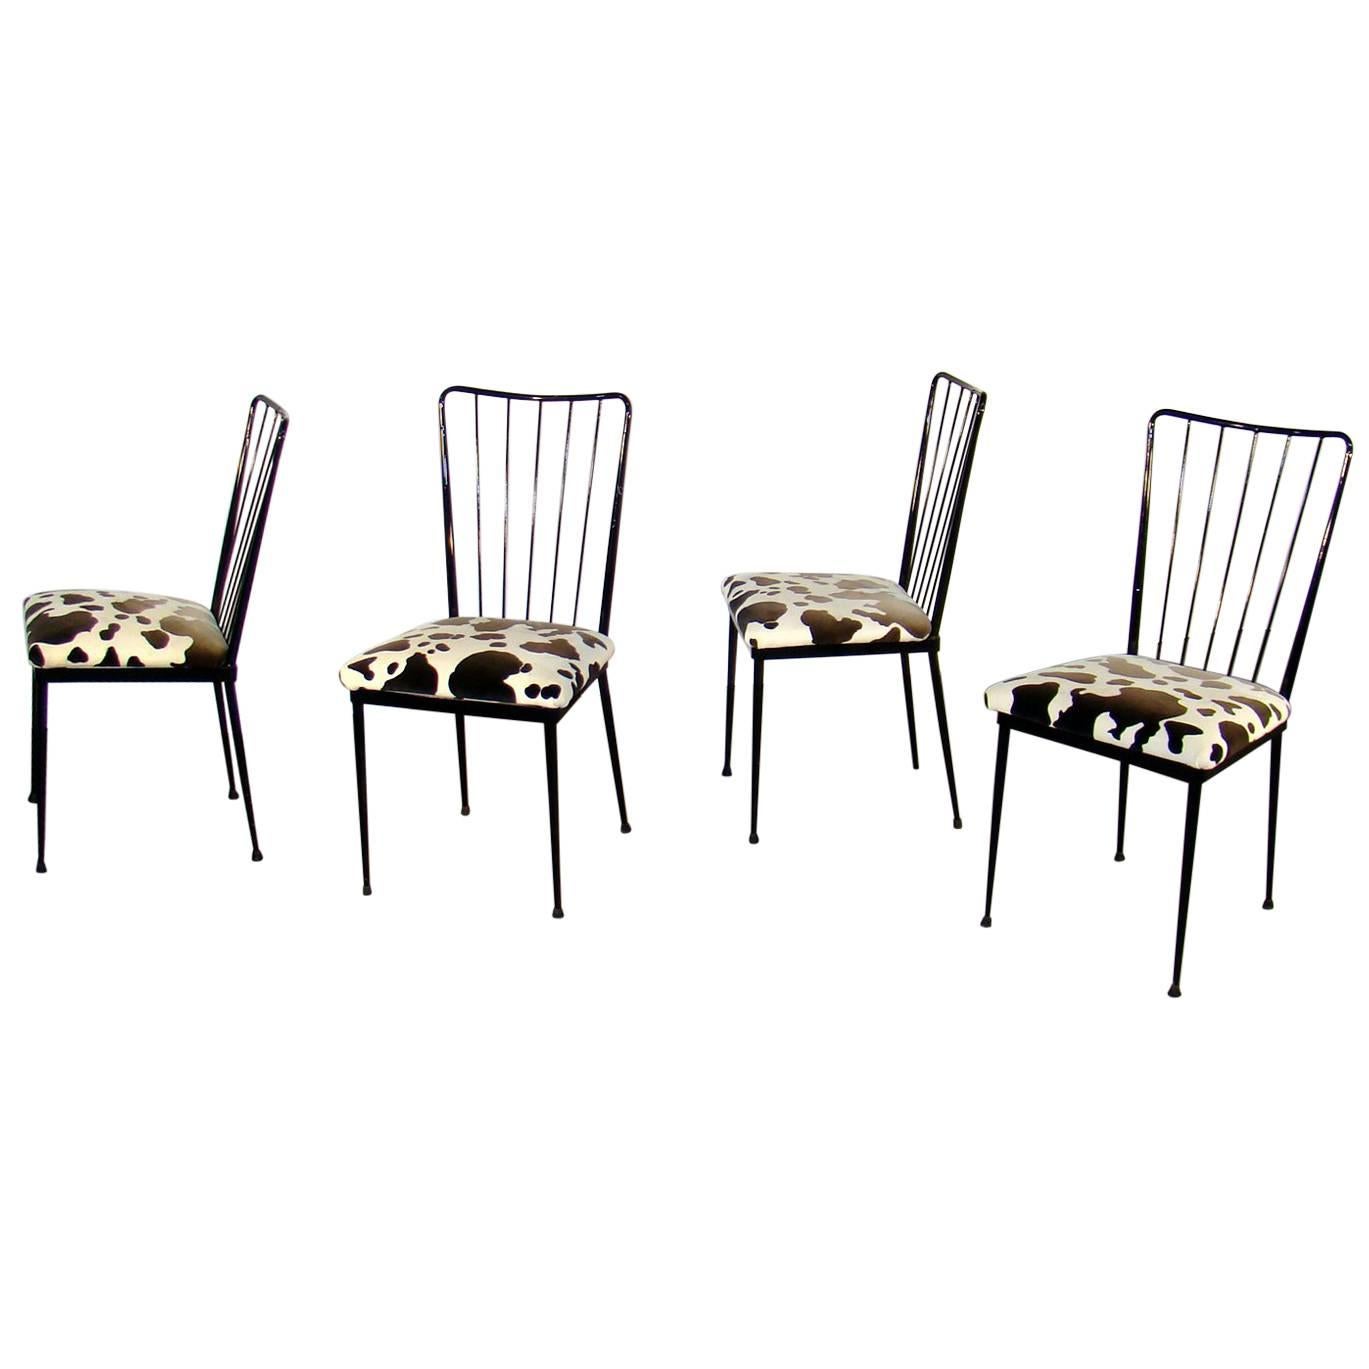 Vier Stühle aus lackiertem Metall im Stil von Colette Gueden, um 1960